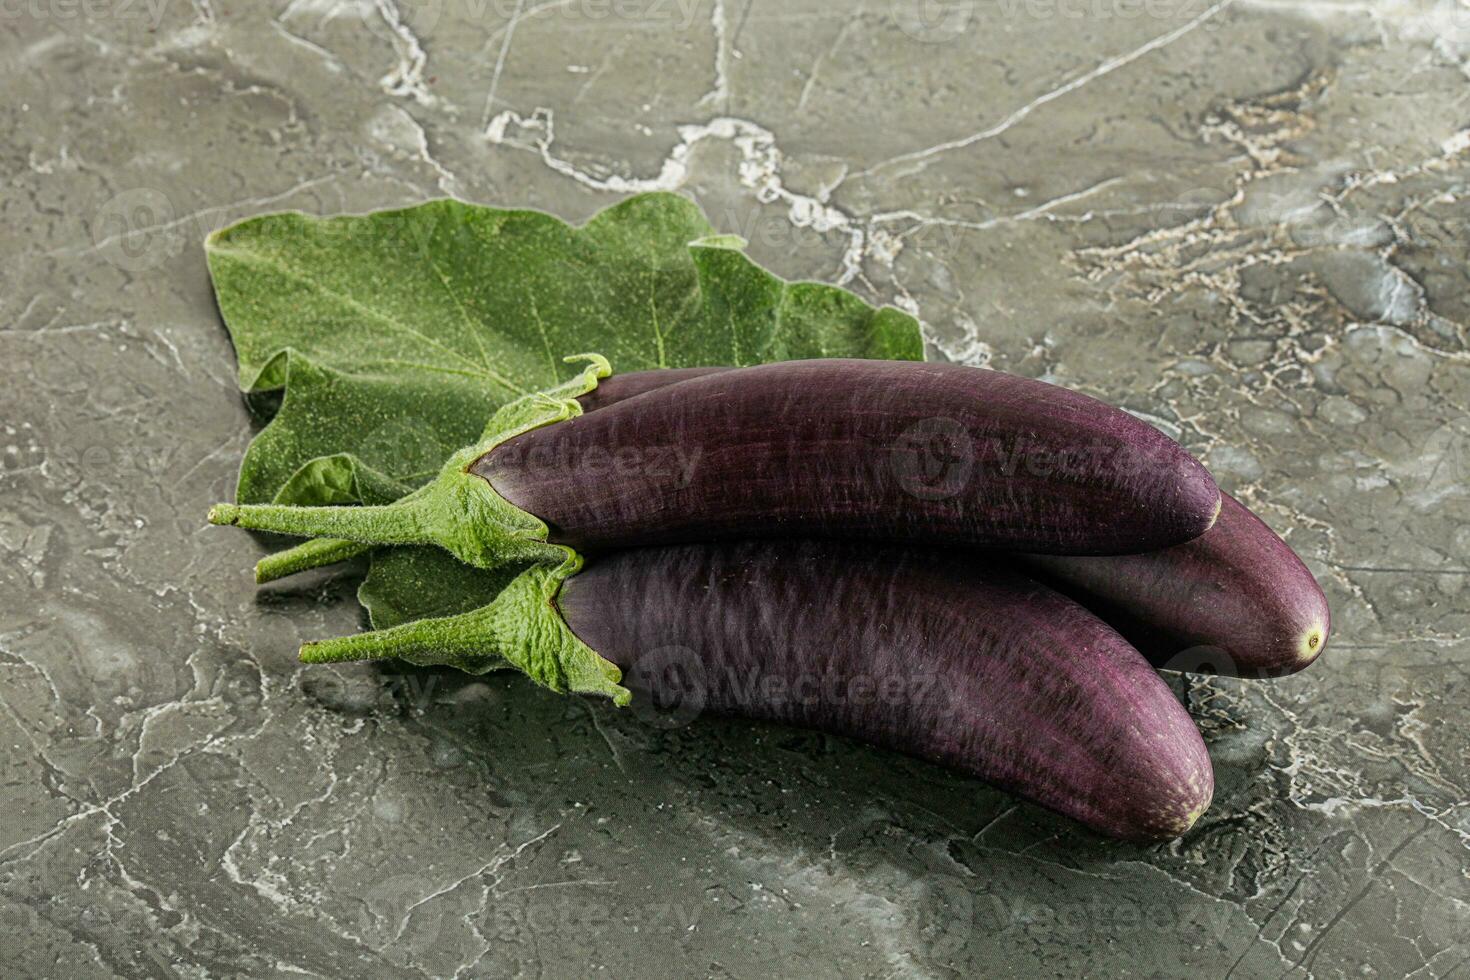 rauw rijp biologisch aubergine met blad foto